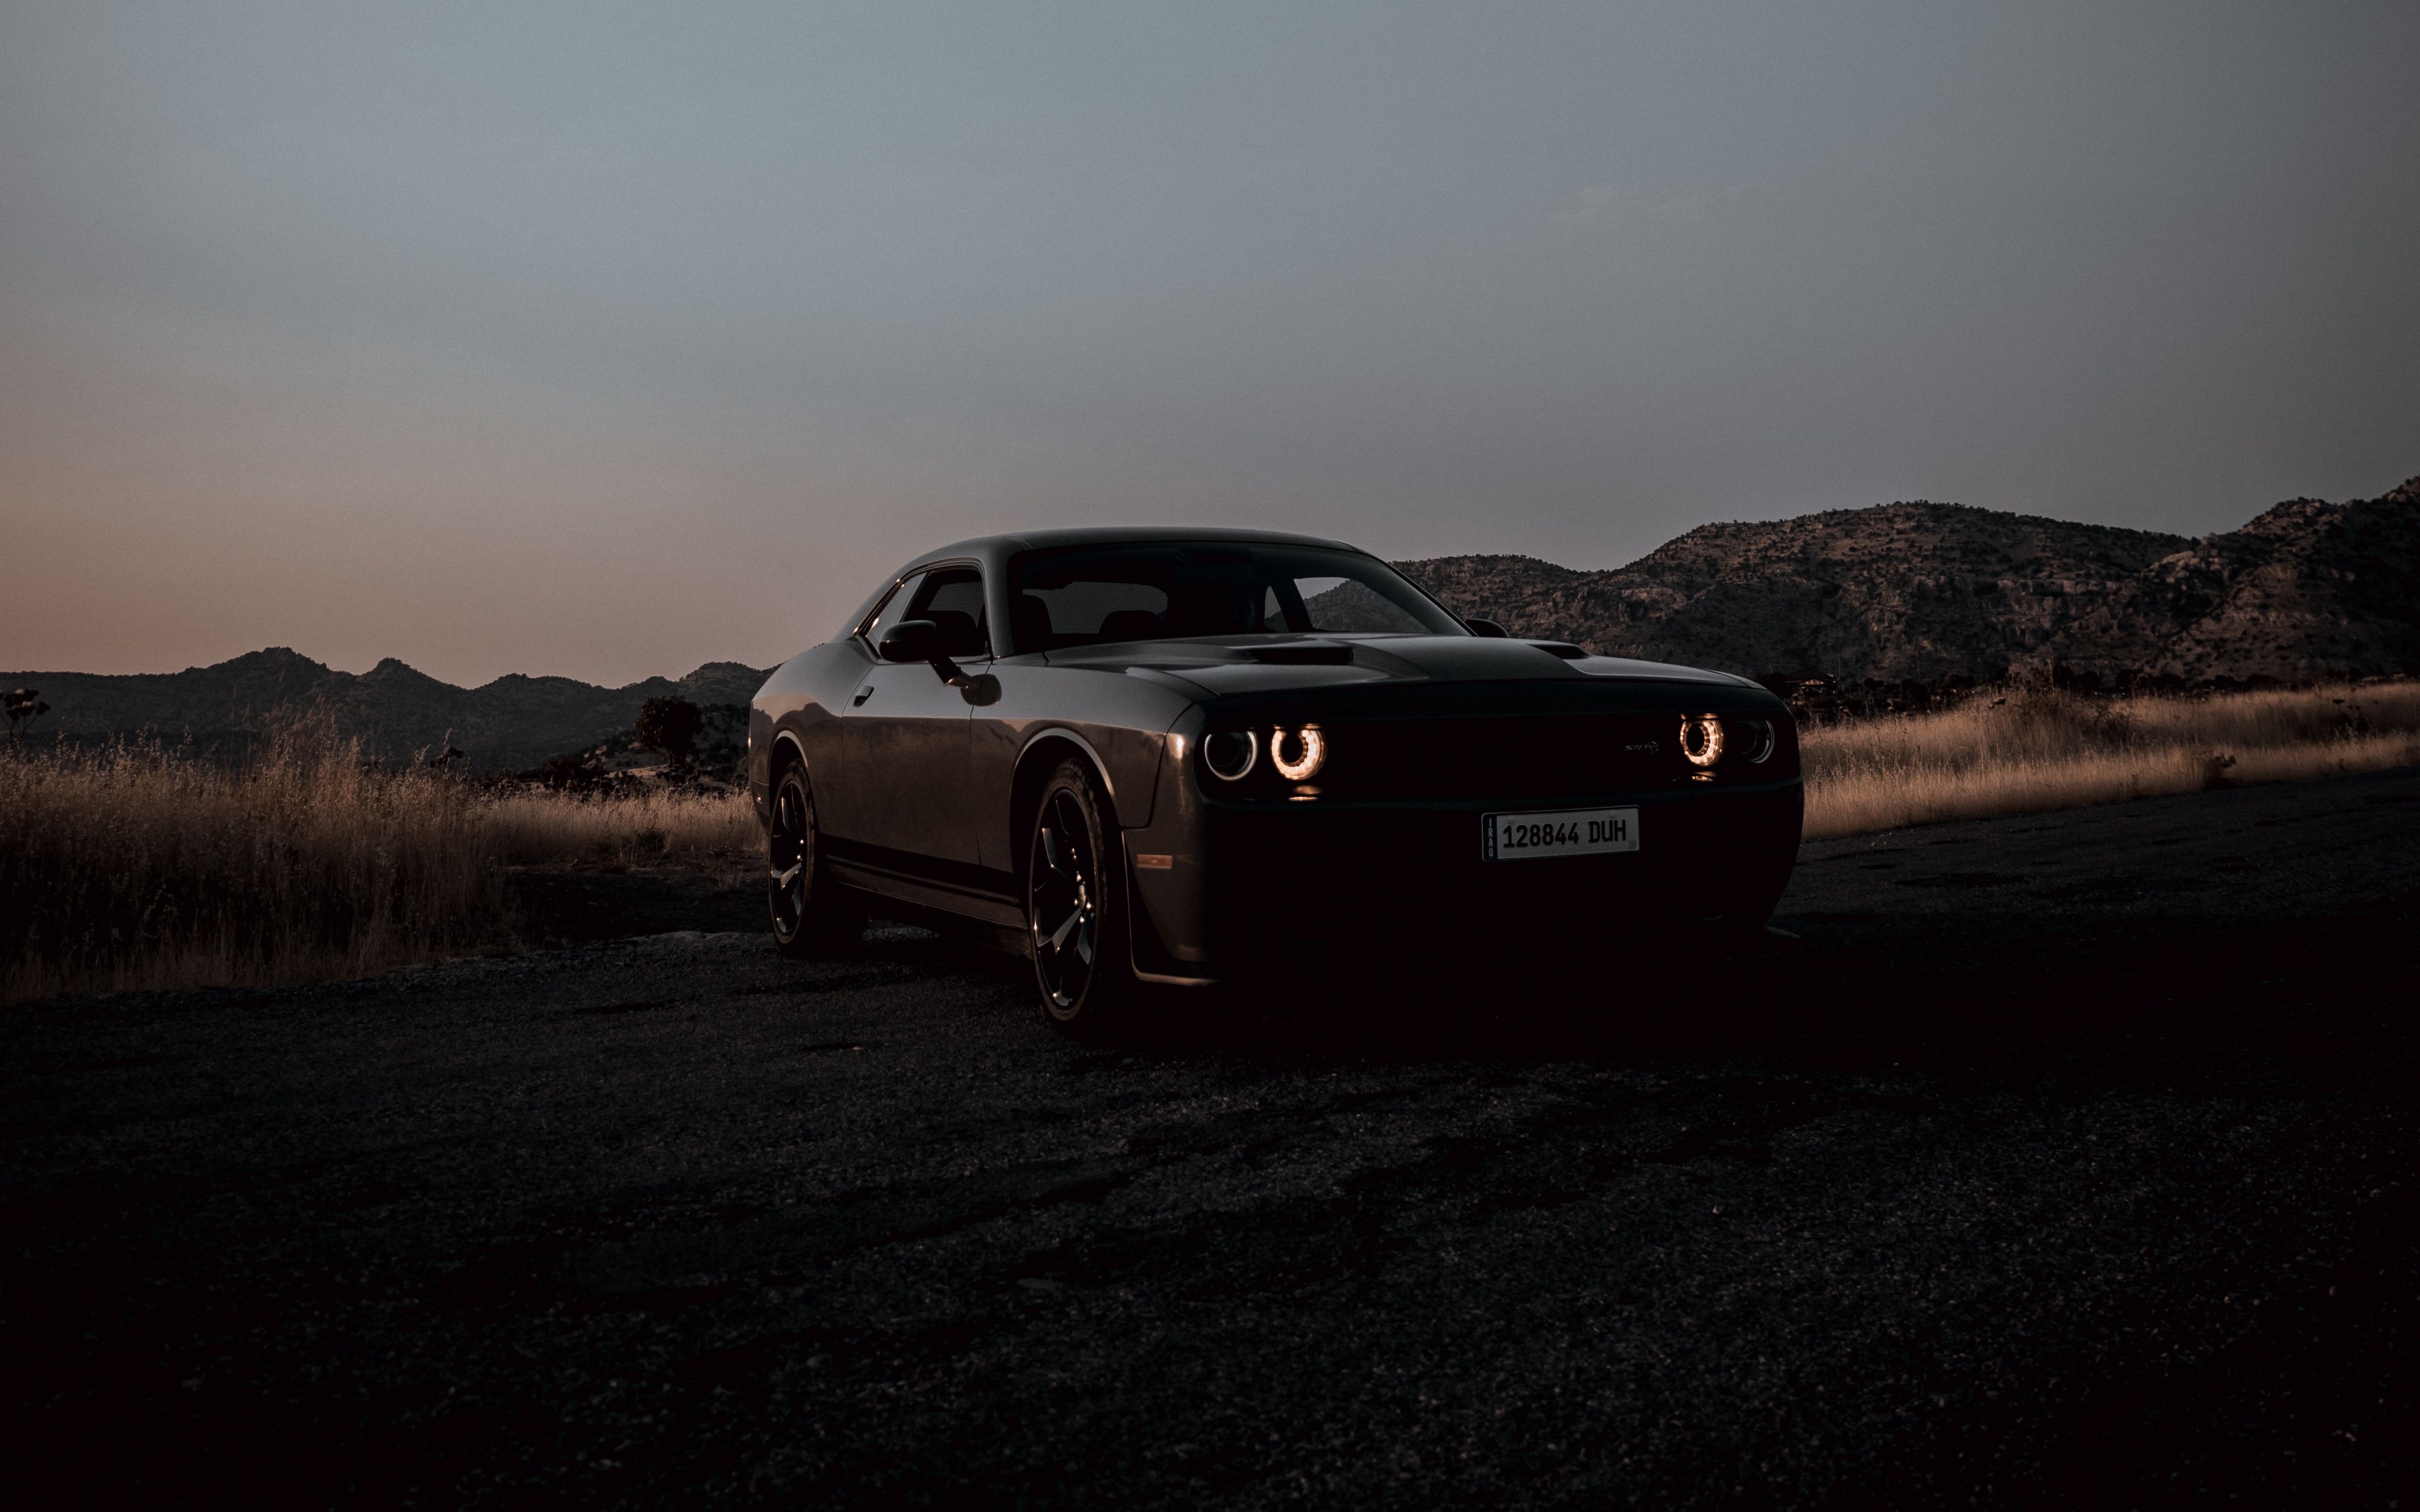 Hình nền Dodge Challenger là một lựa chọn hoàn hảo cho những người yêu thích ô tô. Tận hưởng vẻ đẹp và sức mạnh của chiếc xe này, với những hình ảnh đẹp nhất từ khắp mọi nơi. Tự hào khi trưng bày nó trên màn hình của bạn!